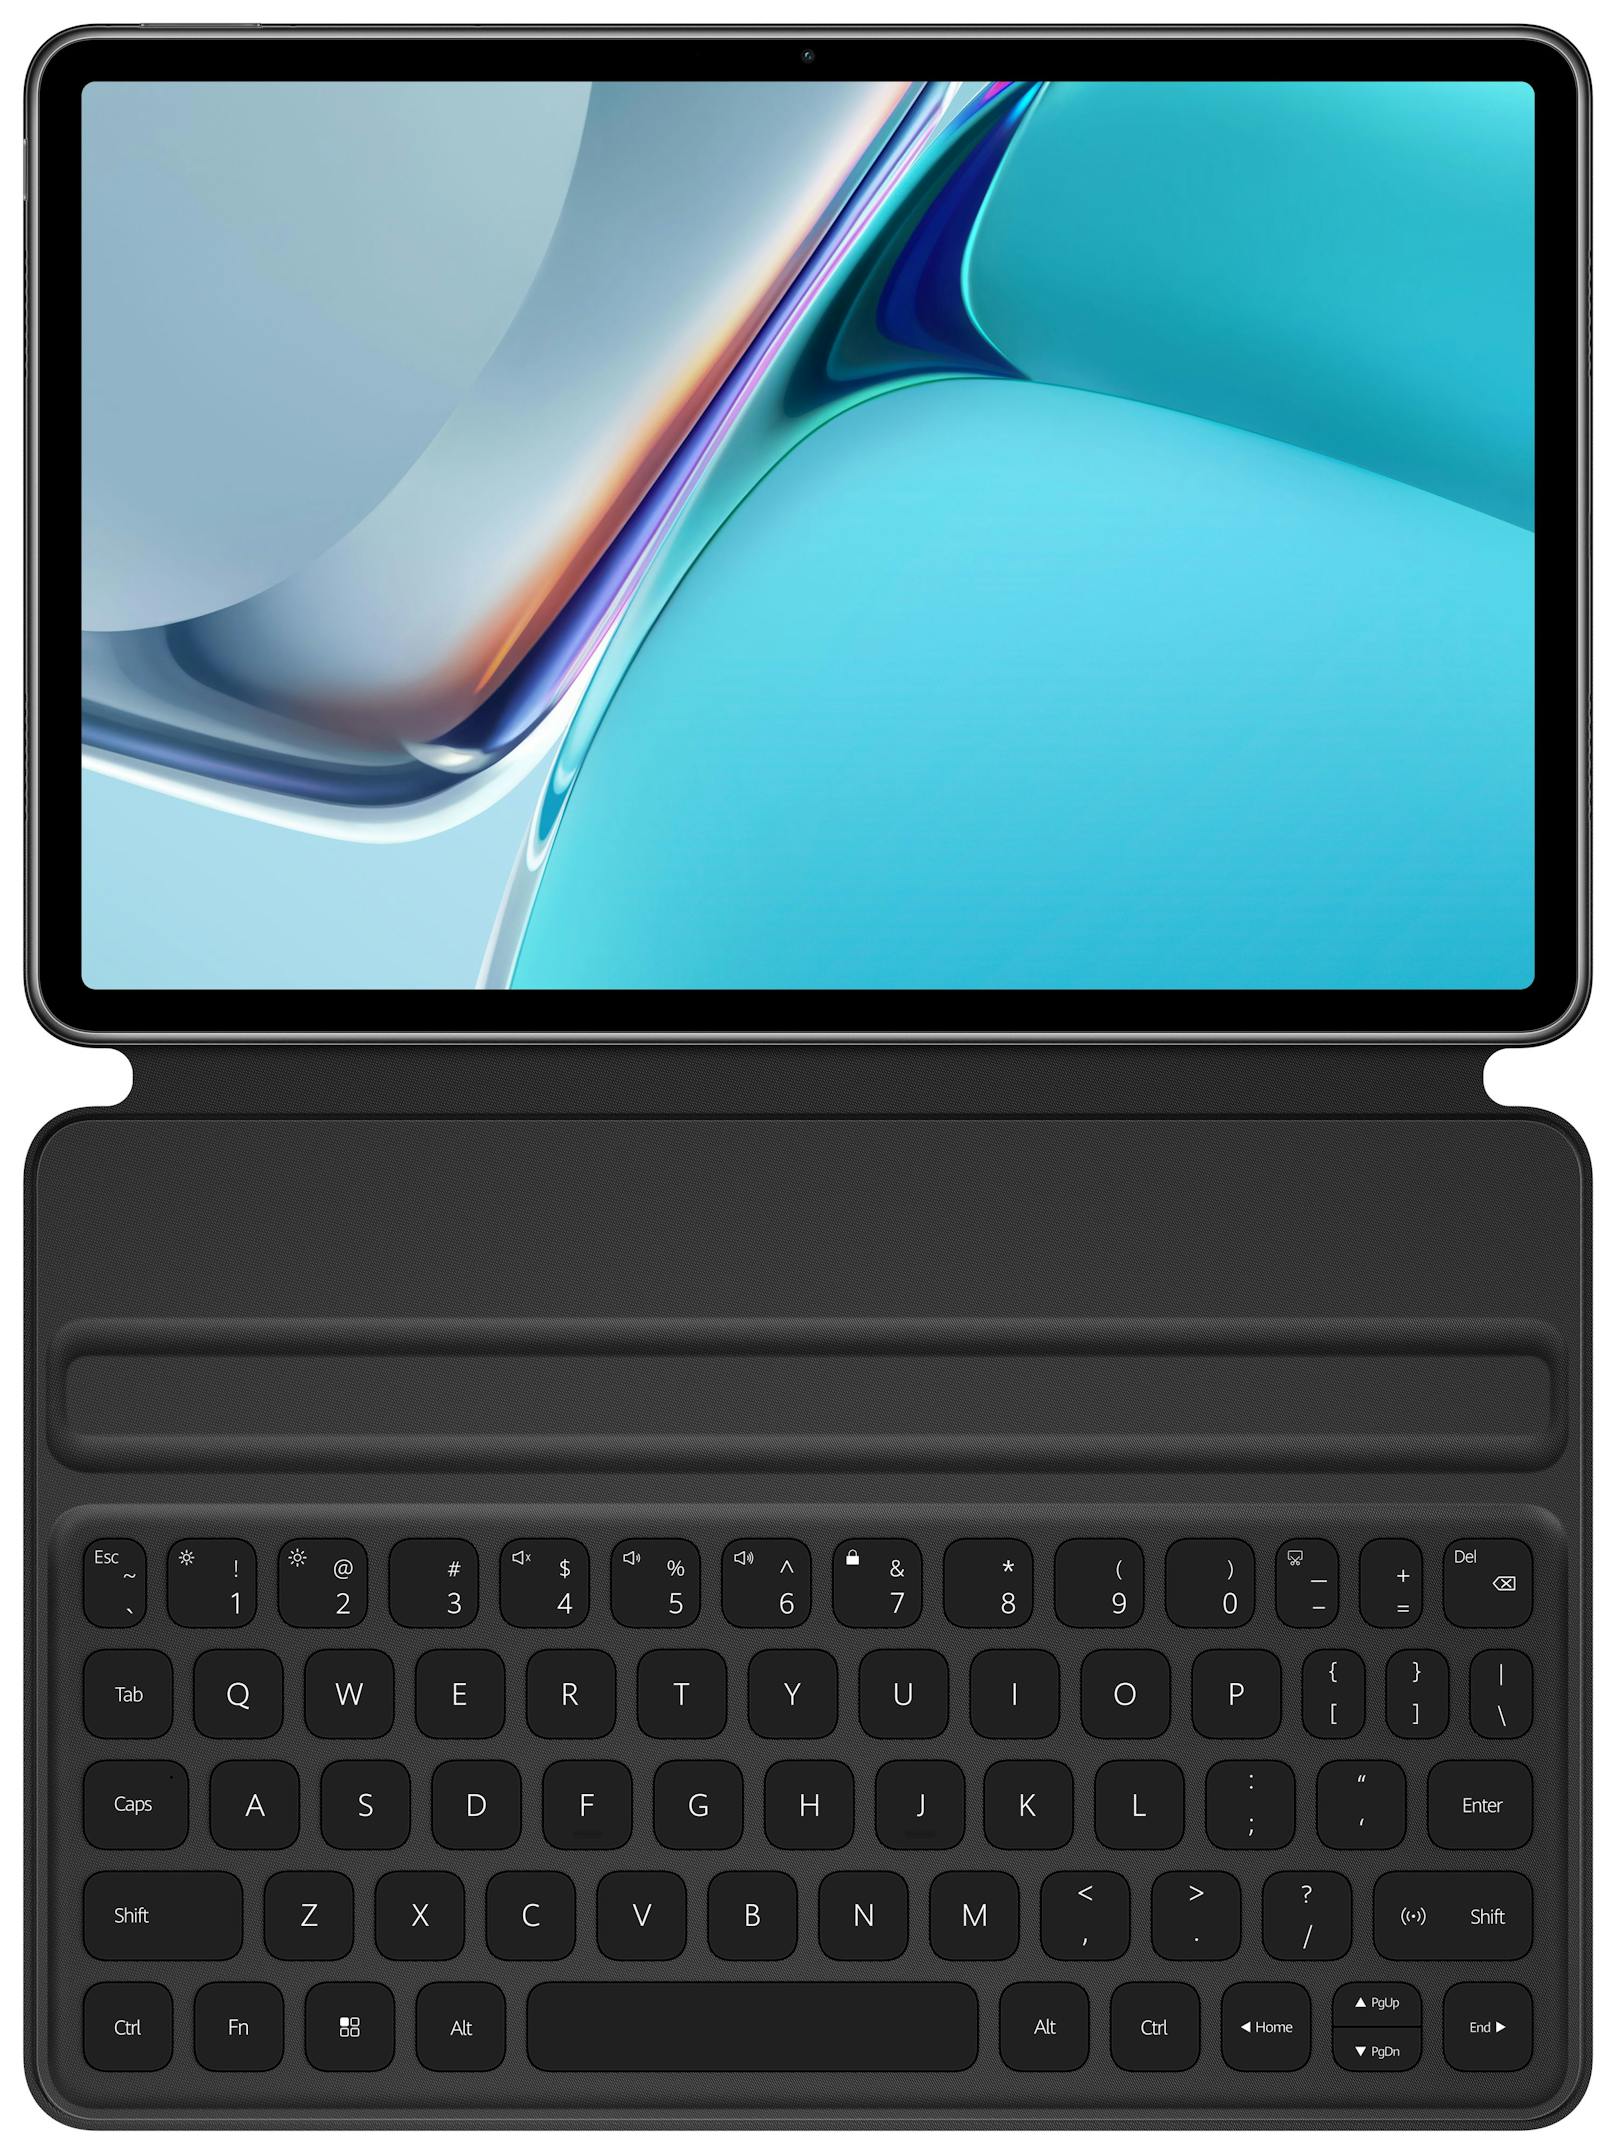 Das Tablet soll über ein 10.95-Zoll großes 120Hz-FullView-Display verfügen und ein Bildschirm-zu-Körper-Verhältnis von 86 Prozent bieten.